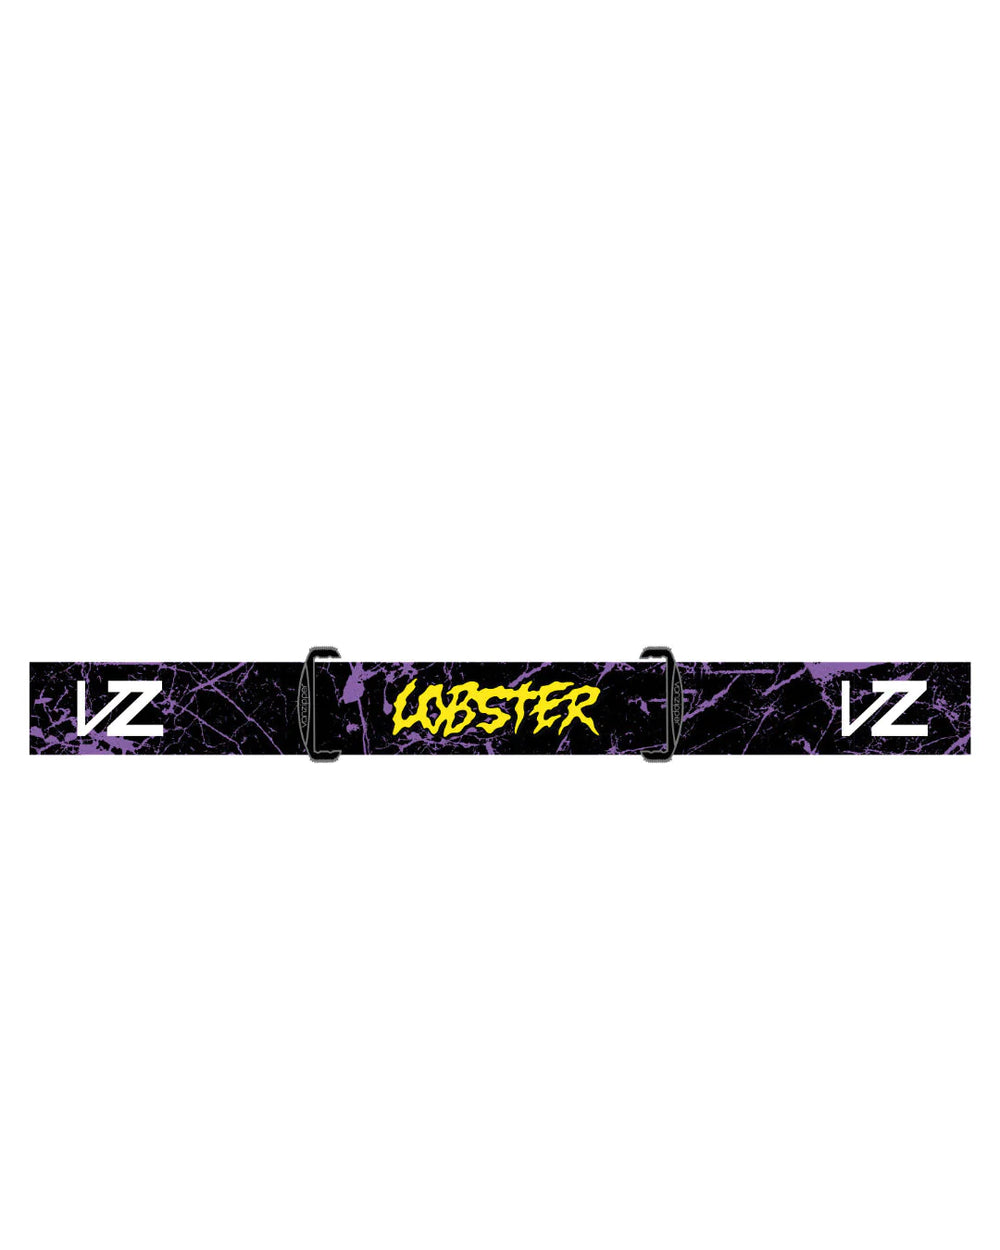 Lobster x Von Zipper Airmaster Goggles